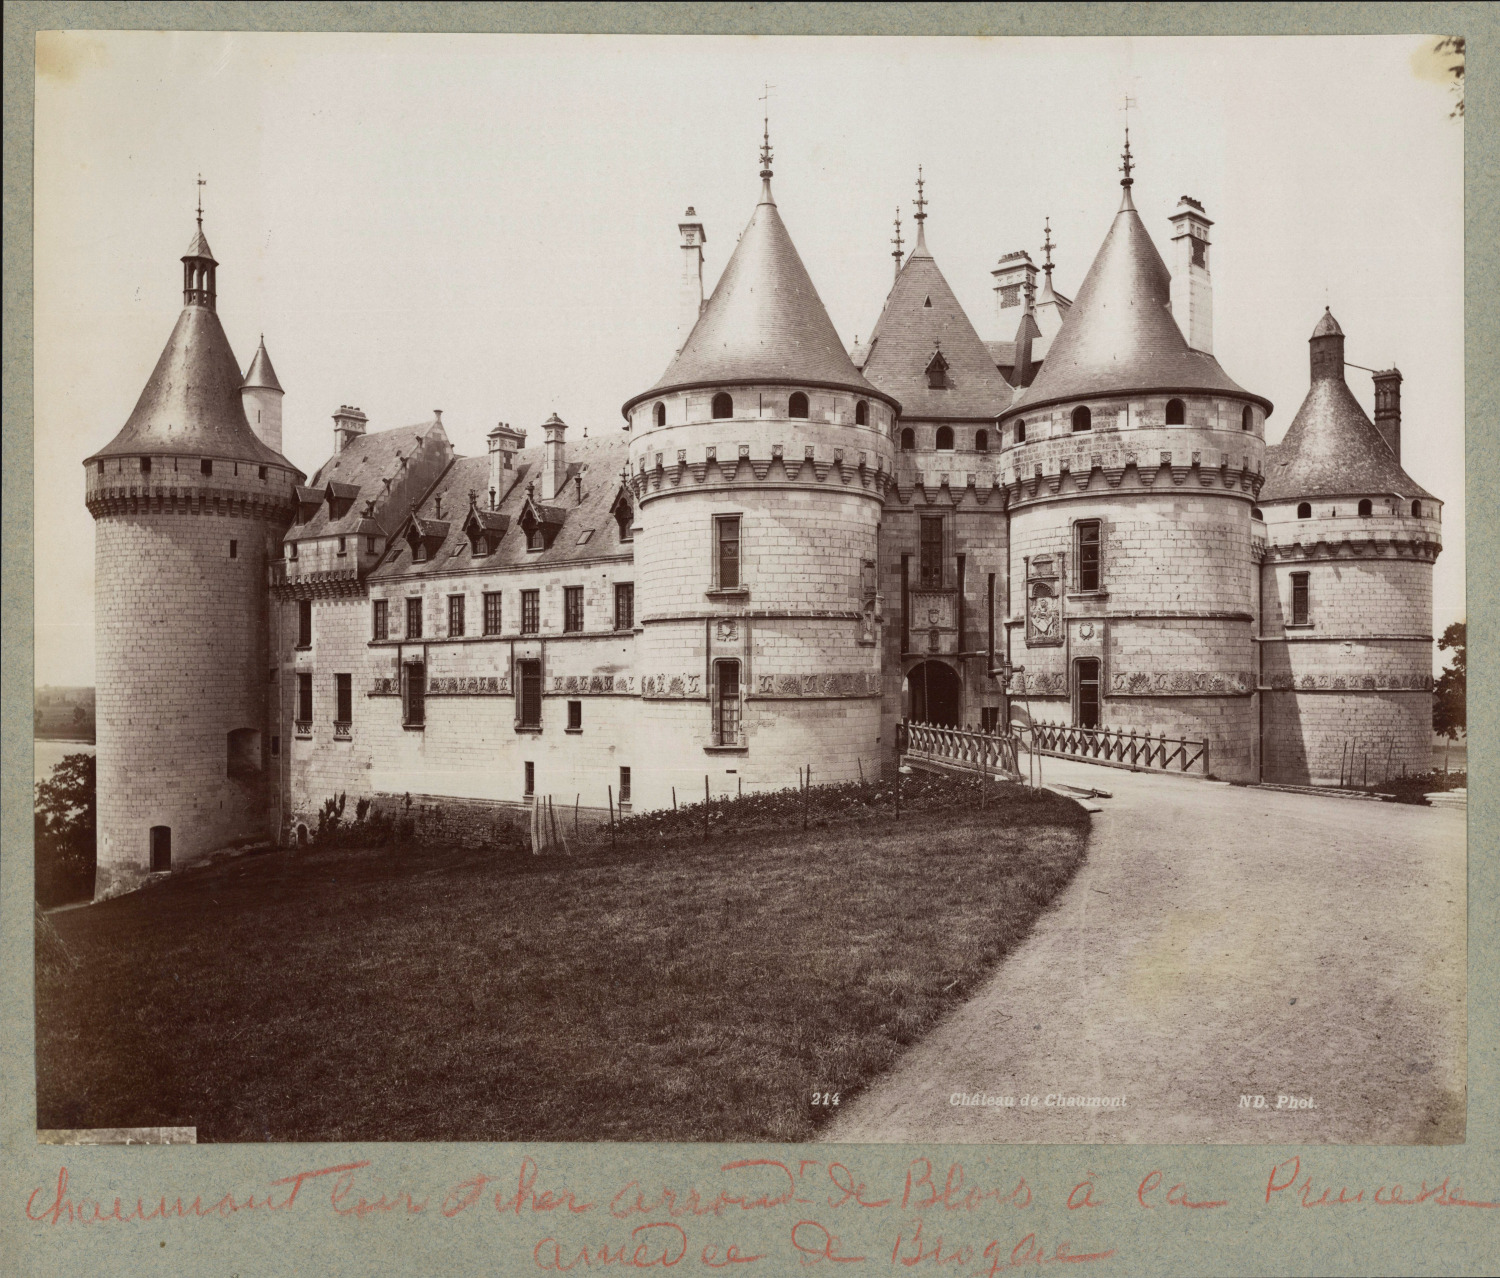 France, Loir-et-Cher, Château de Chaumont, circa 1880, vintage print vintage vintage vintage print vintage print